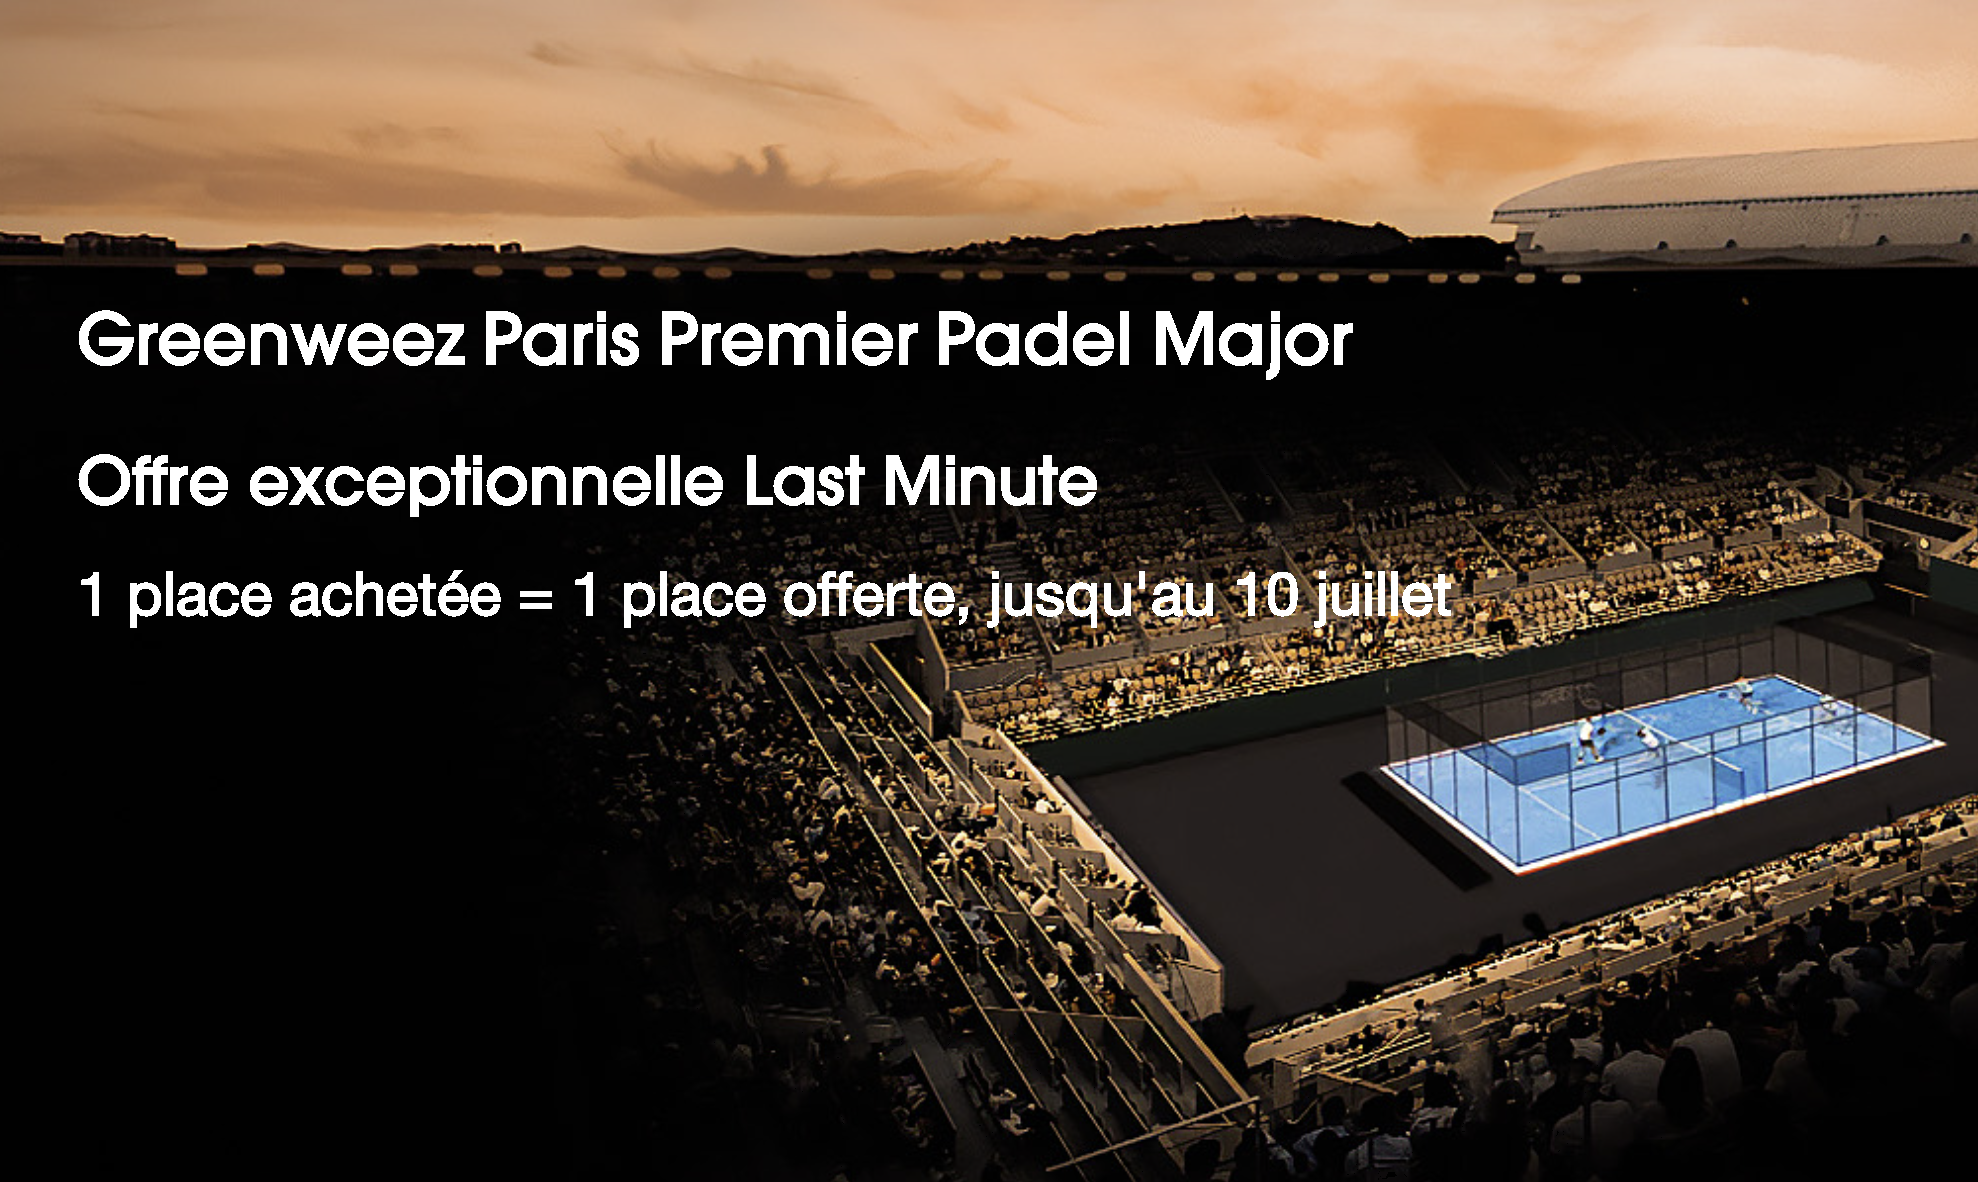 Greenweez Paris Premier Padel Major : en biljett erbjuds för en köpt biljett